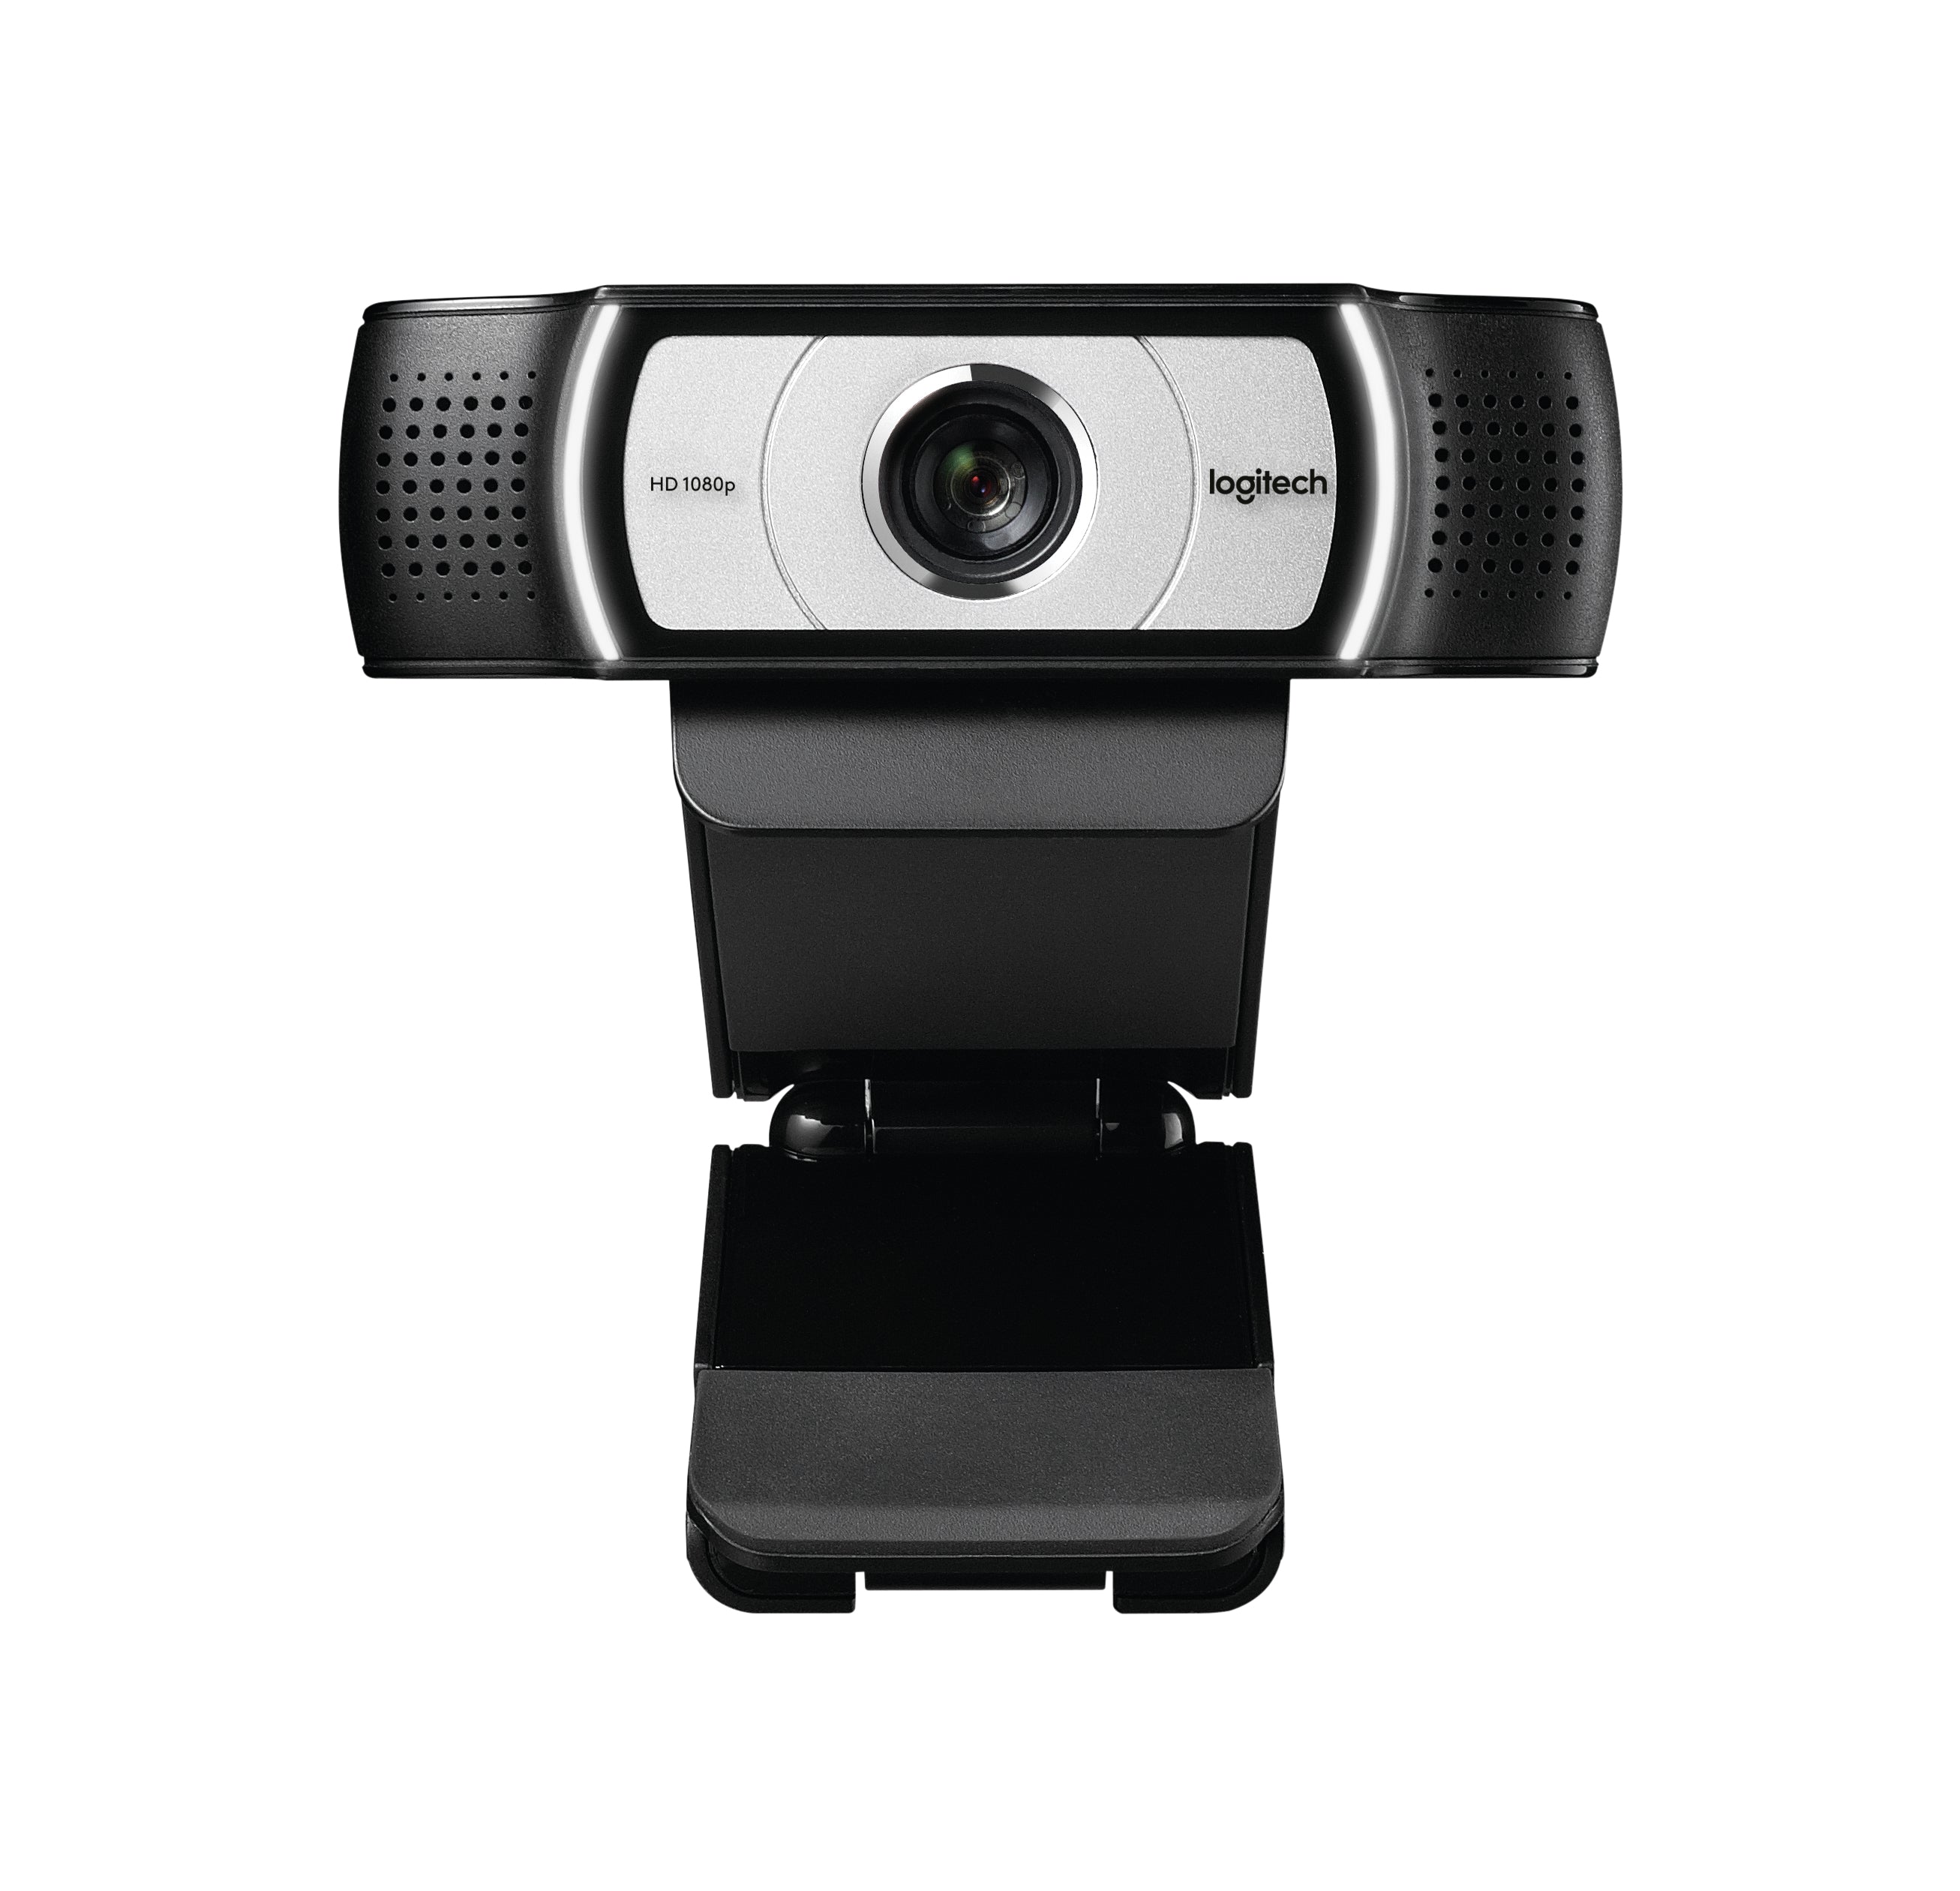 Logitech Webcam C930 1920 x 1080 Webkamera mit Gewinde